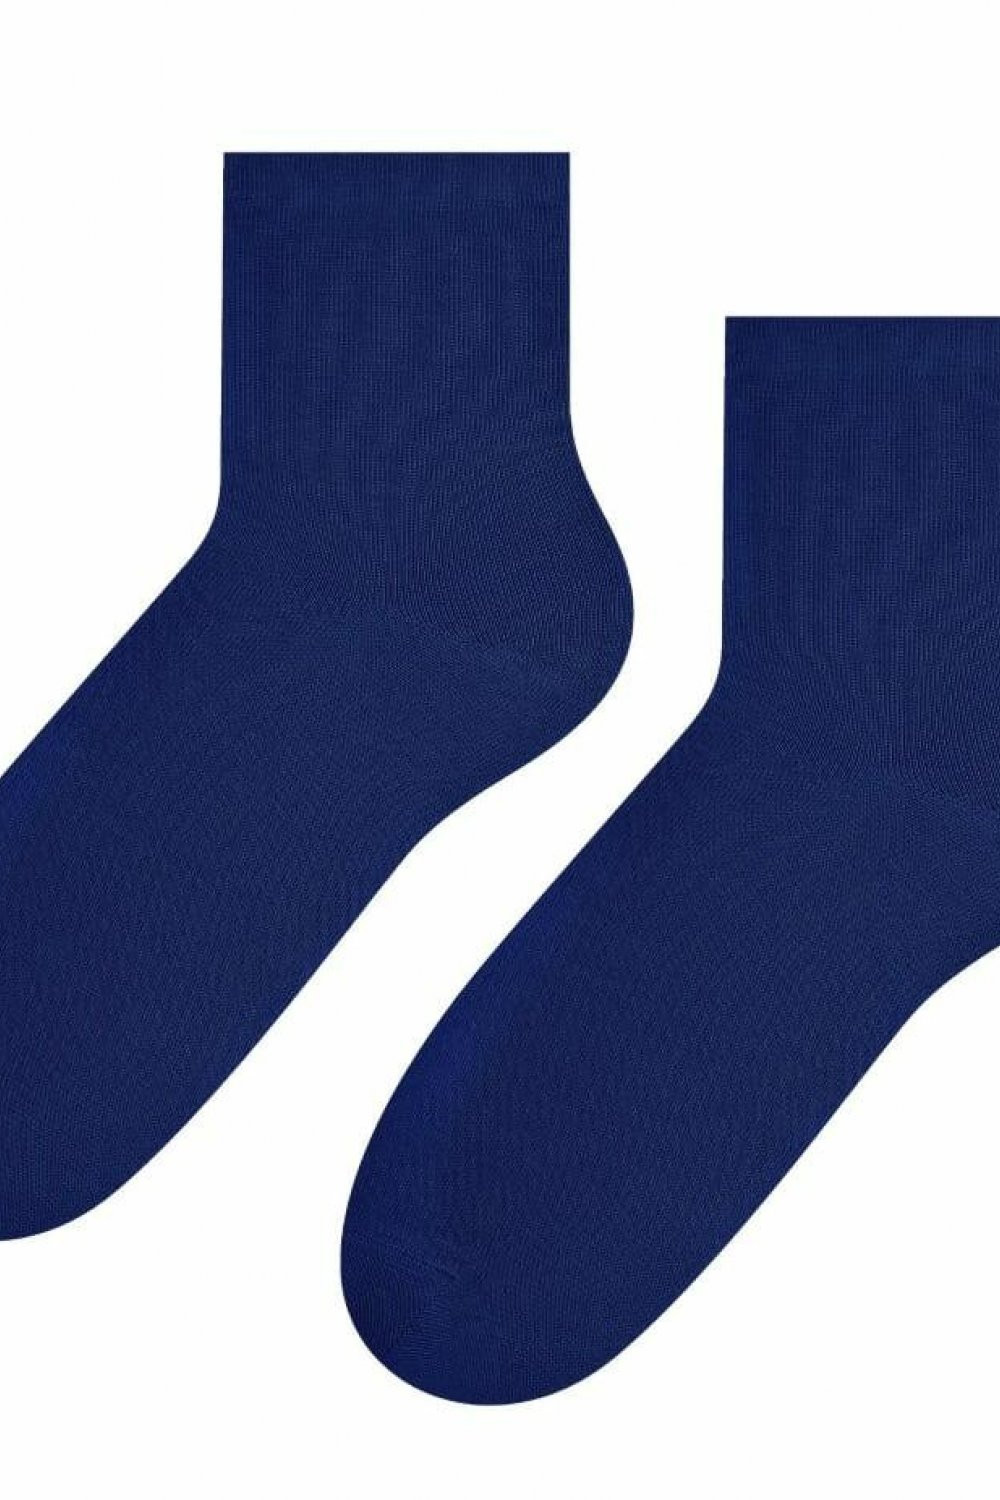 Dámské ponožky 037 dark blue - Steven tmavě modrá 35/37